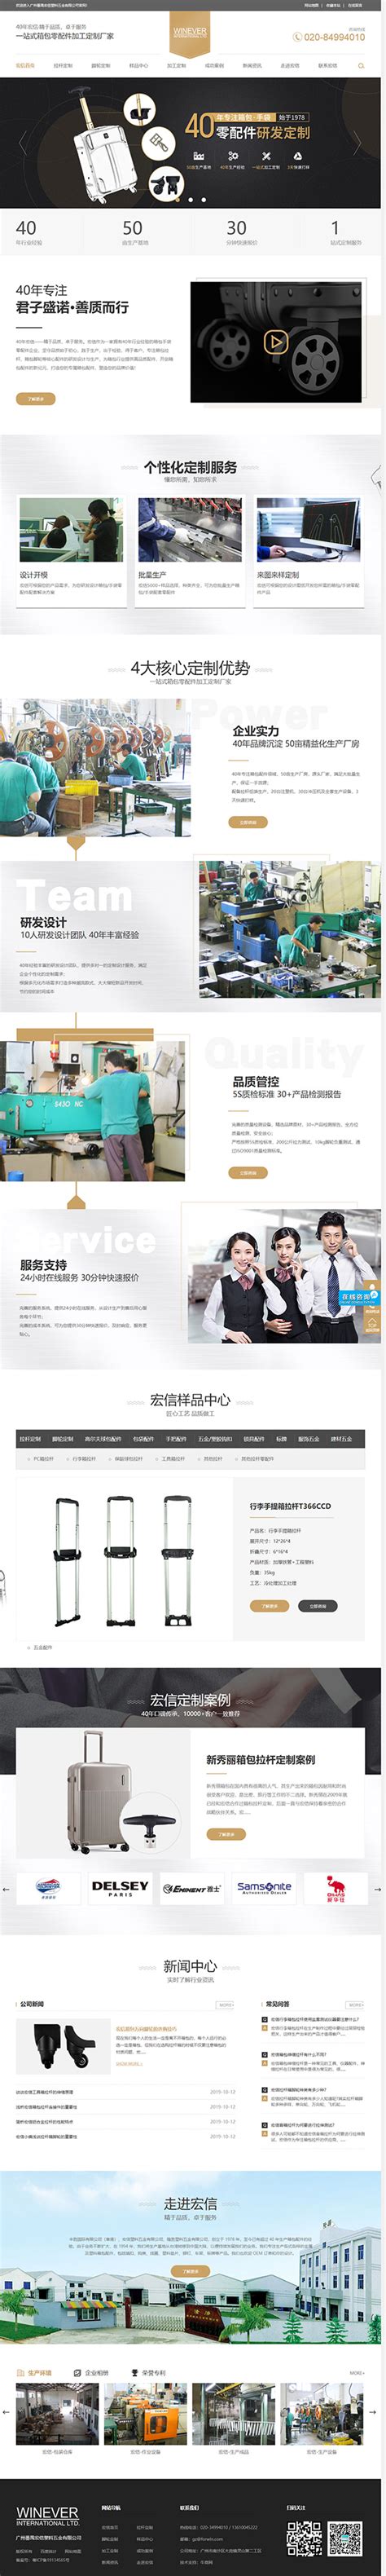 番禺宏信塑料五金-营销型网站案例展示